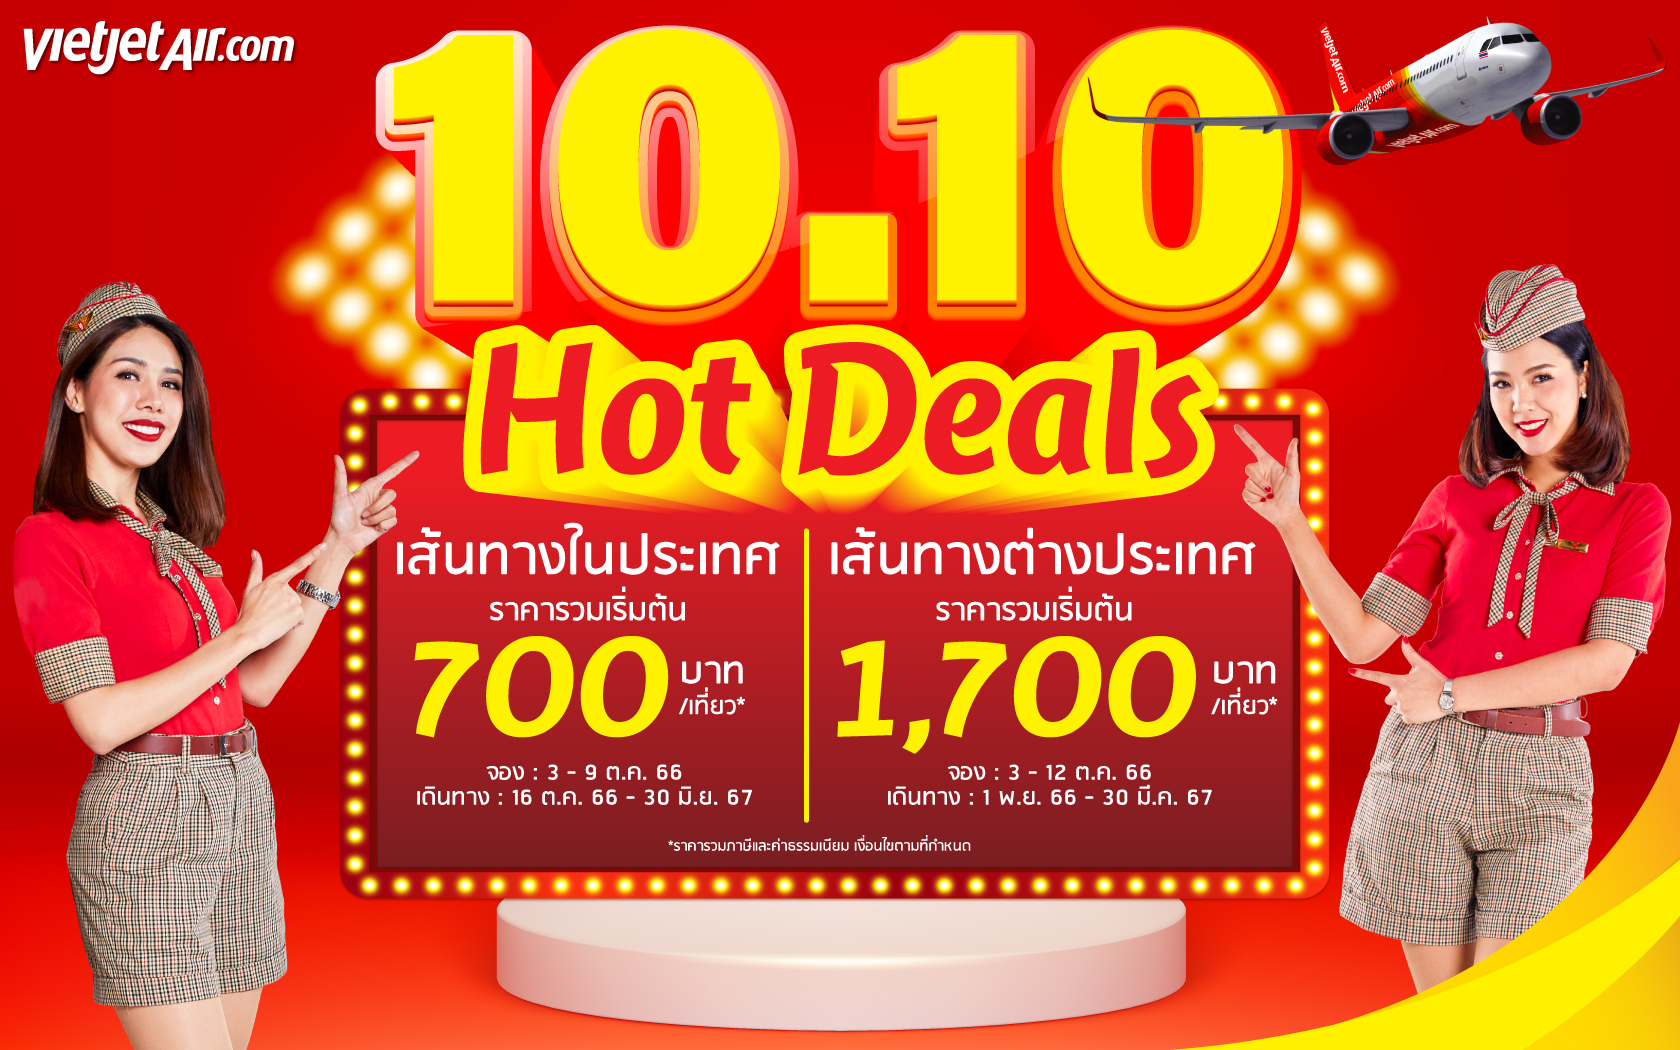 ไทยเวียตเจ็ทออกโปรฯ ’10.10 Hot Deals’ ตั๋วเริ่มต้น 700 บาท